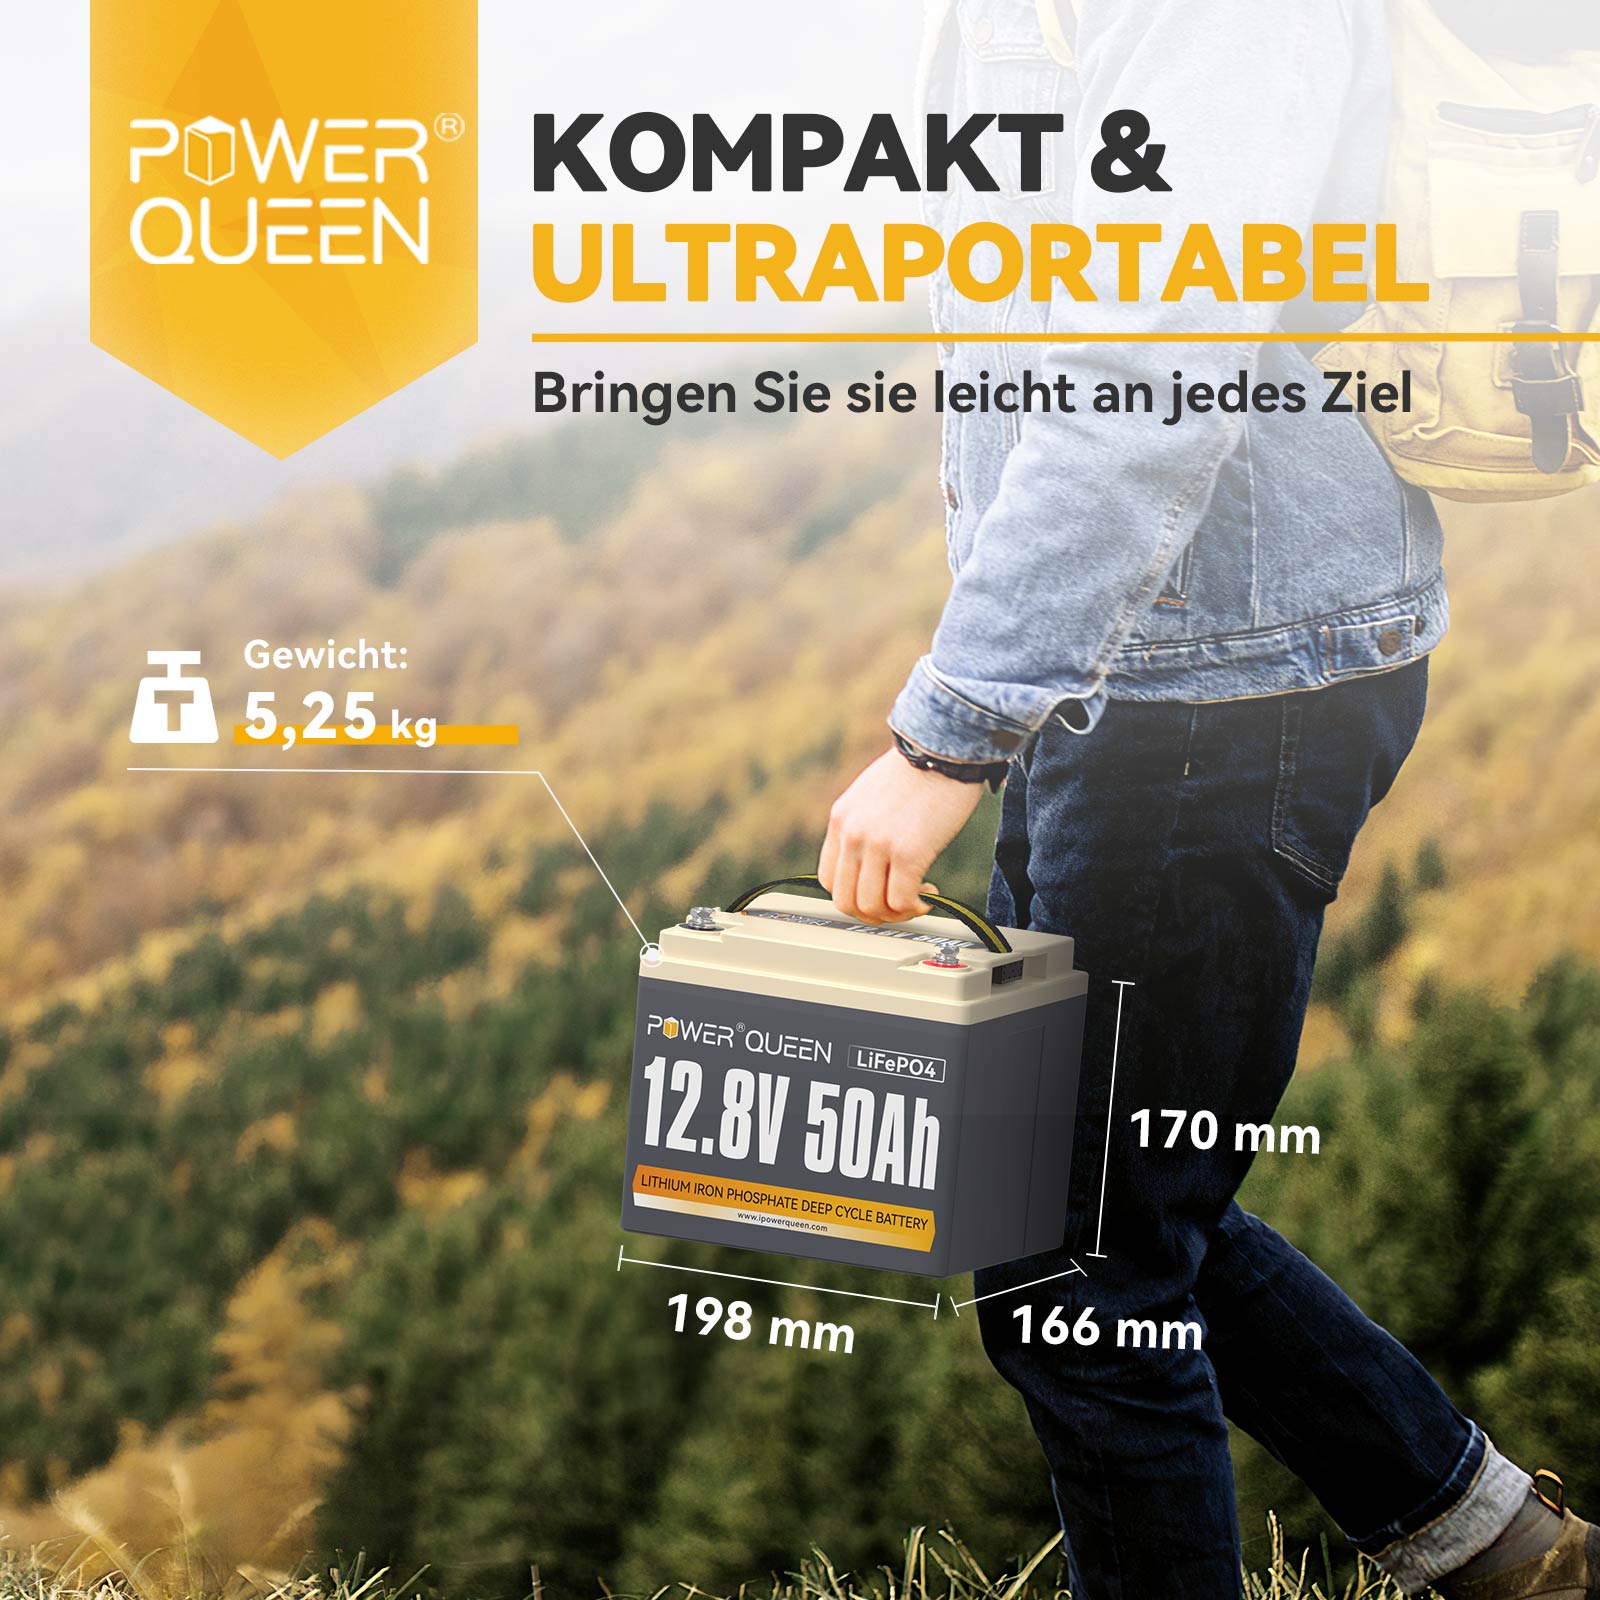 【0% IVA】Batería LiFePO4 Power Queen de 12,8 V y 50 Ah, BMS integrado de 50 A